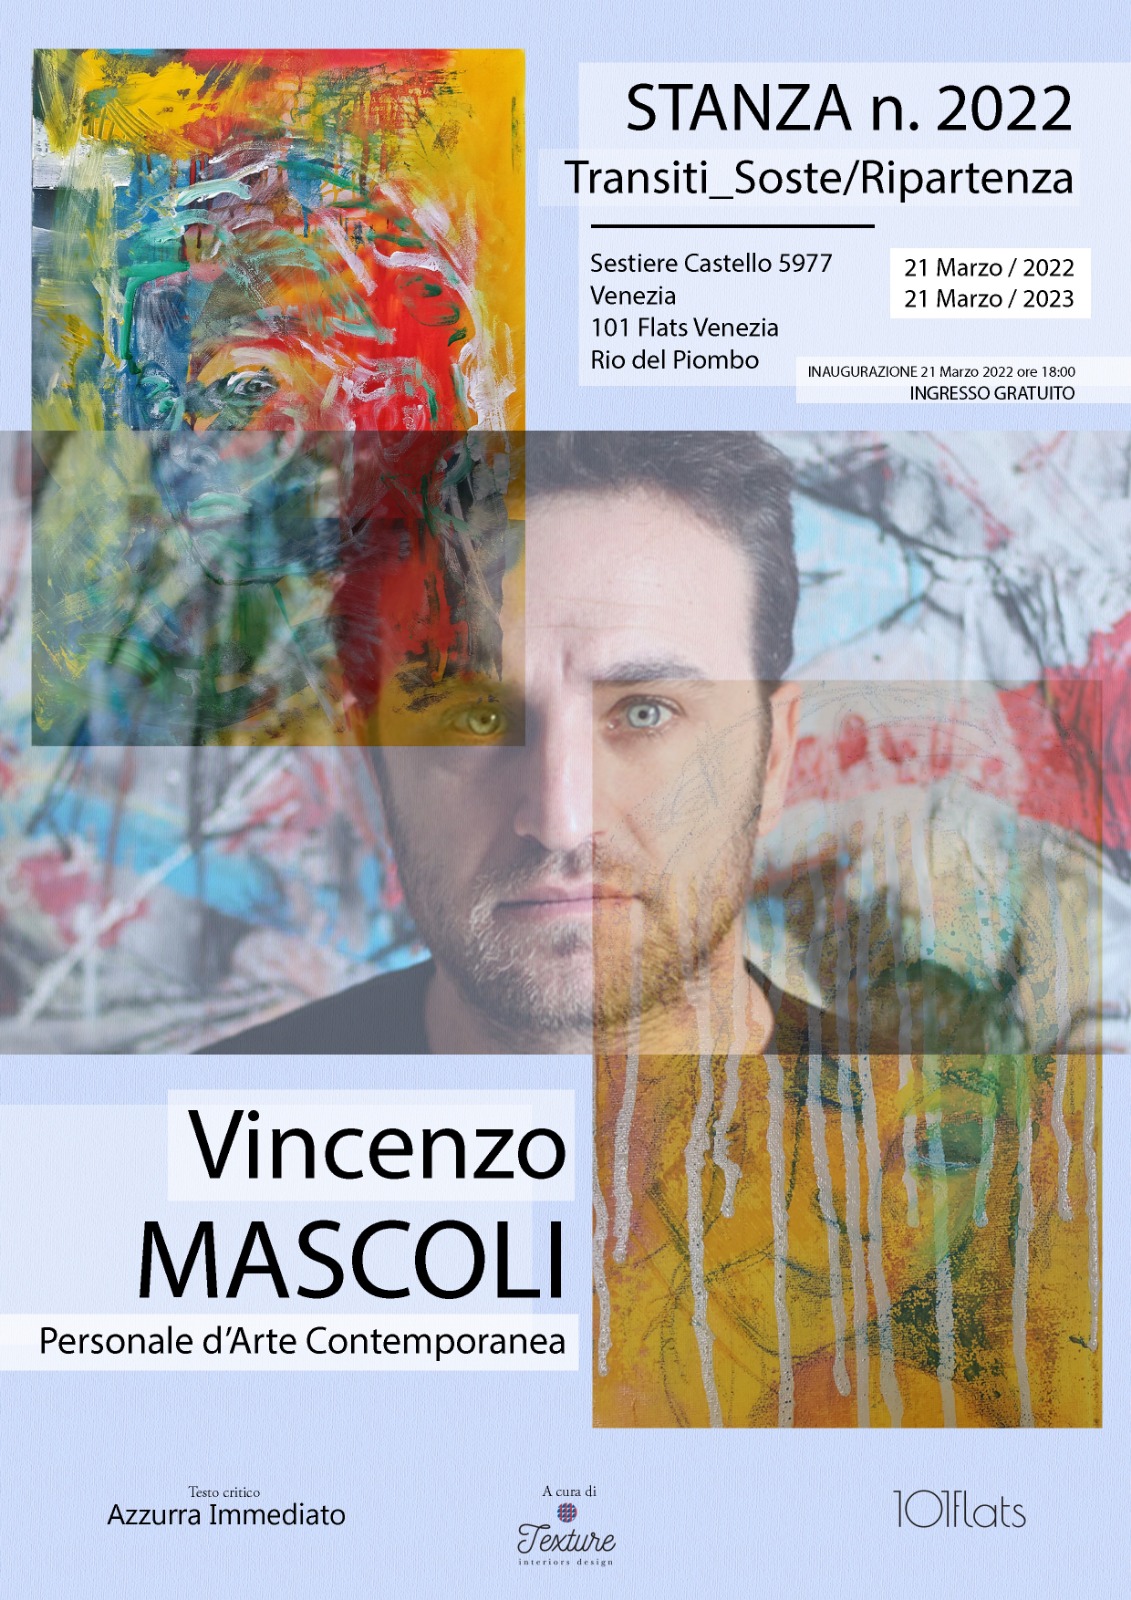 Vincenzo mascoli in Stanza 2022 Venezia